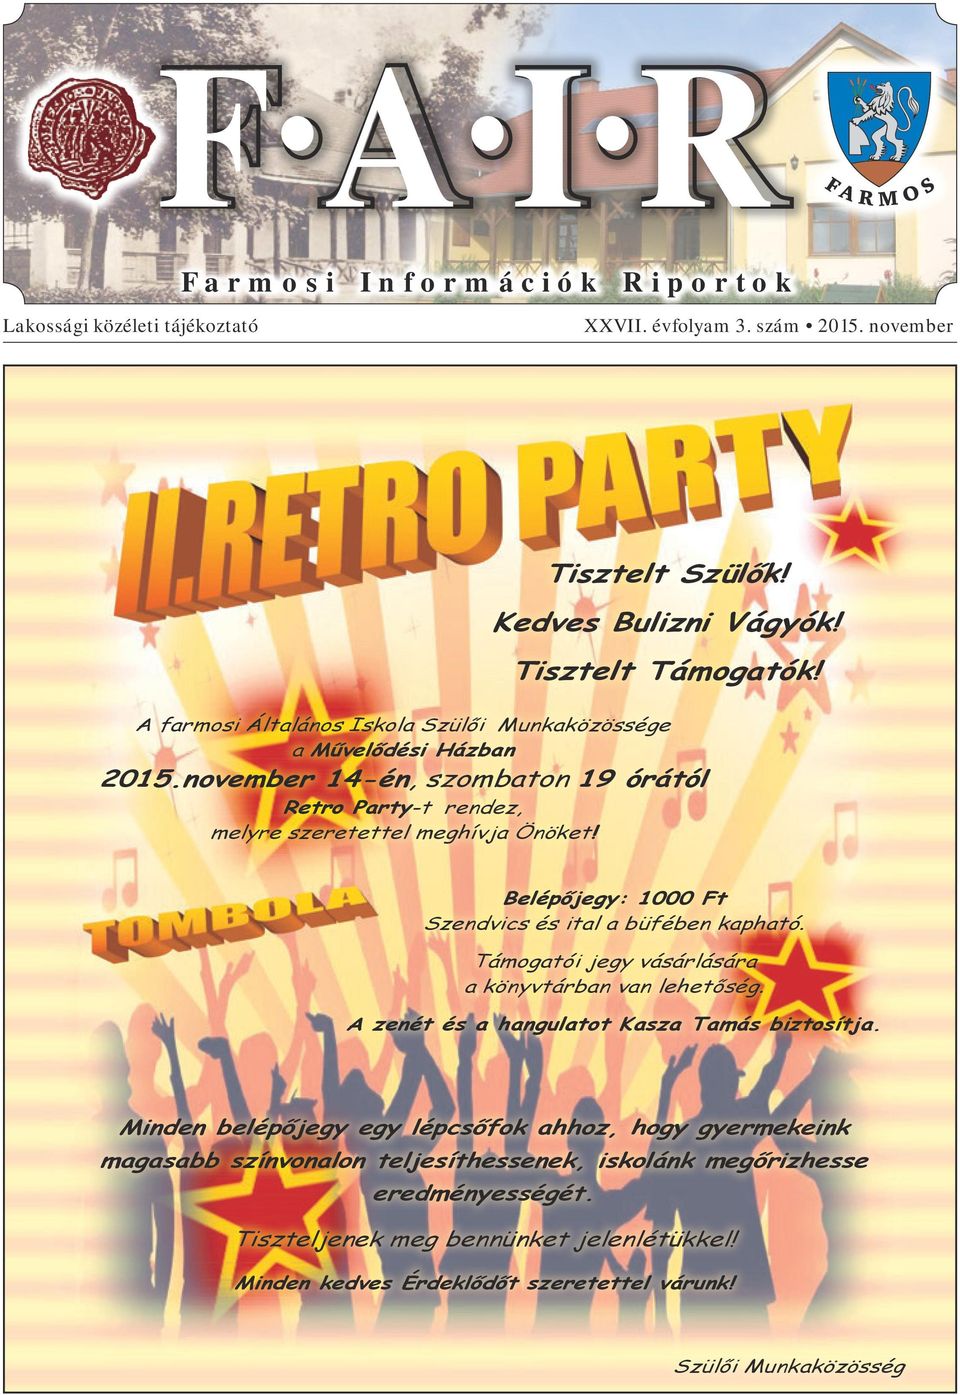 Retro Party-t rendez, melyre szeretettel meghívja Önöket! - PDF Ingyenes  letöltés